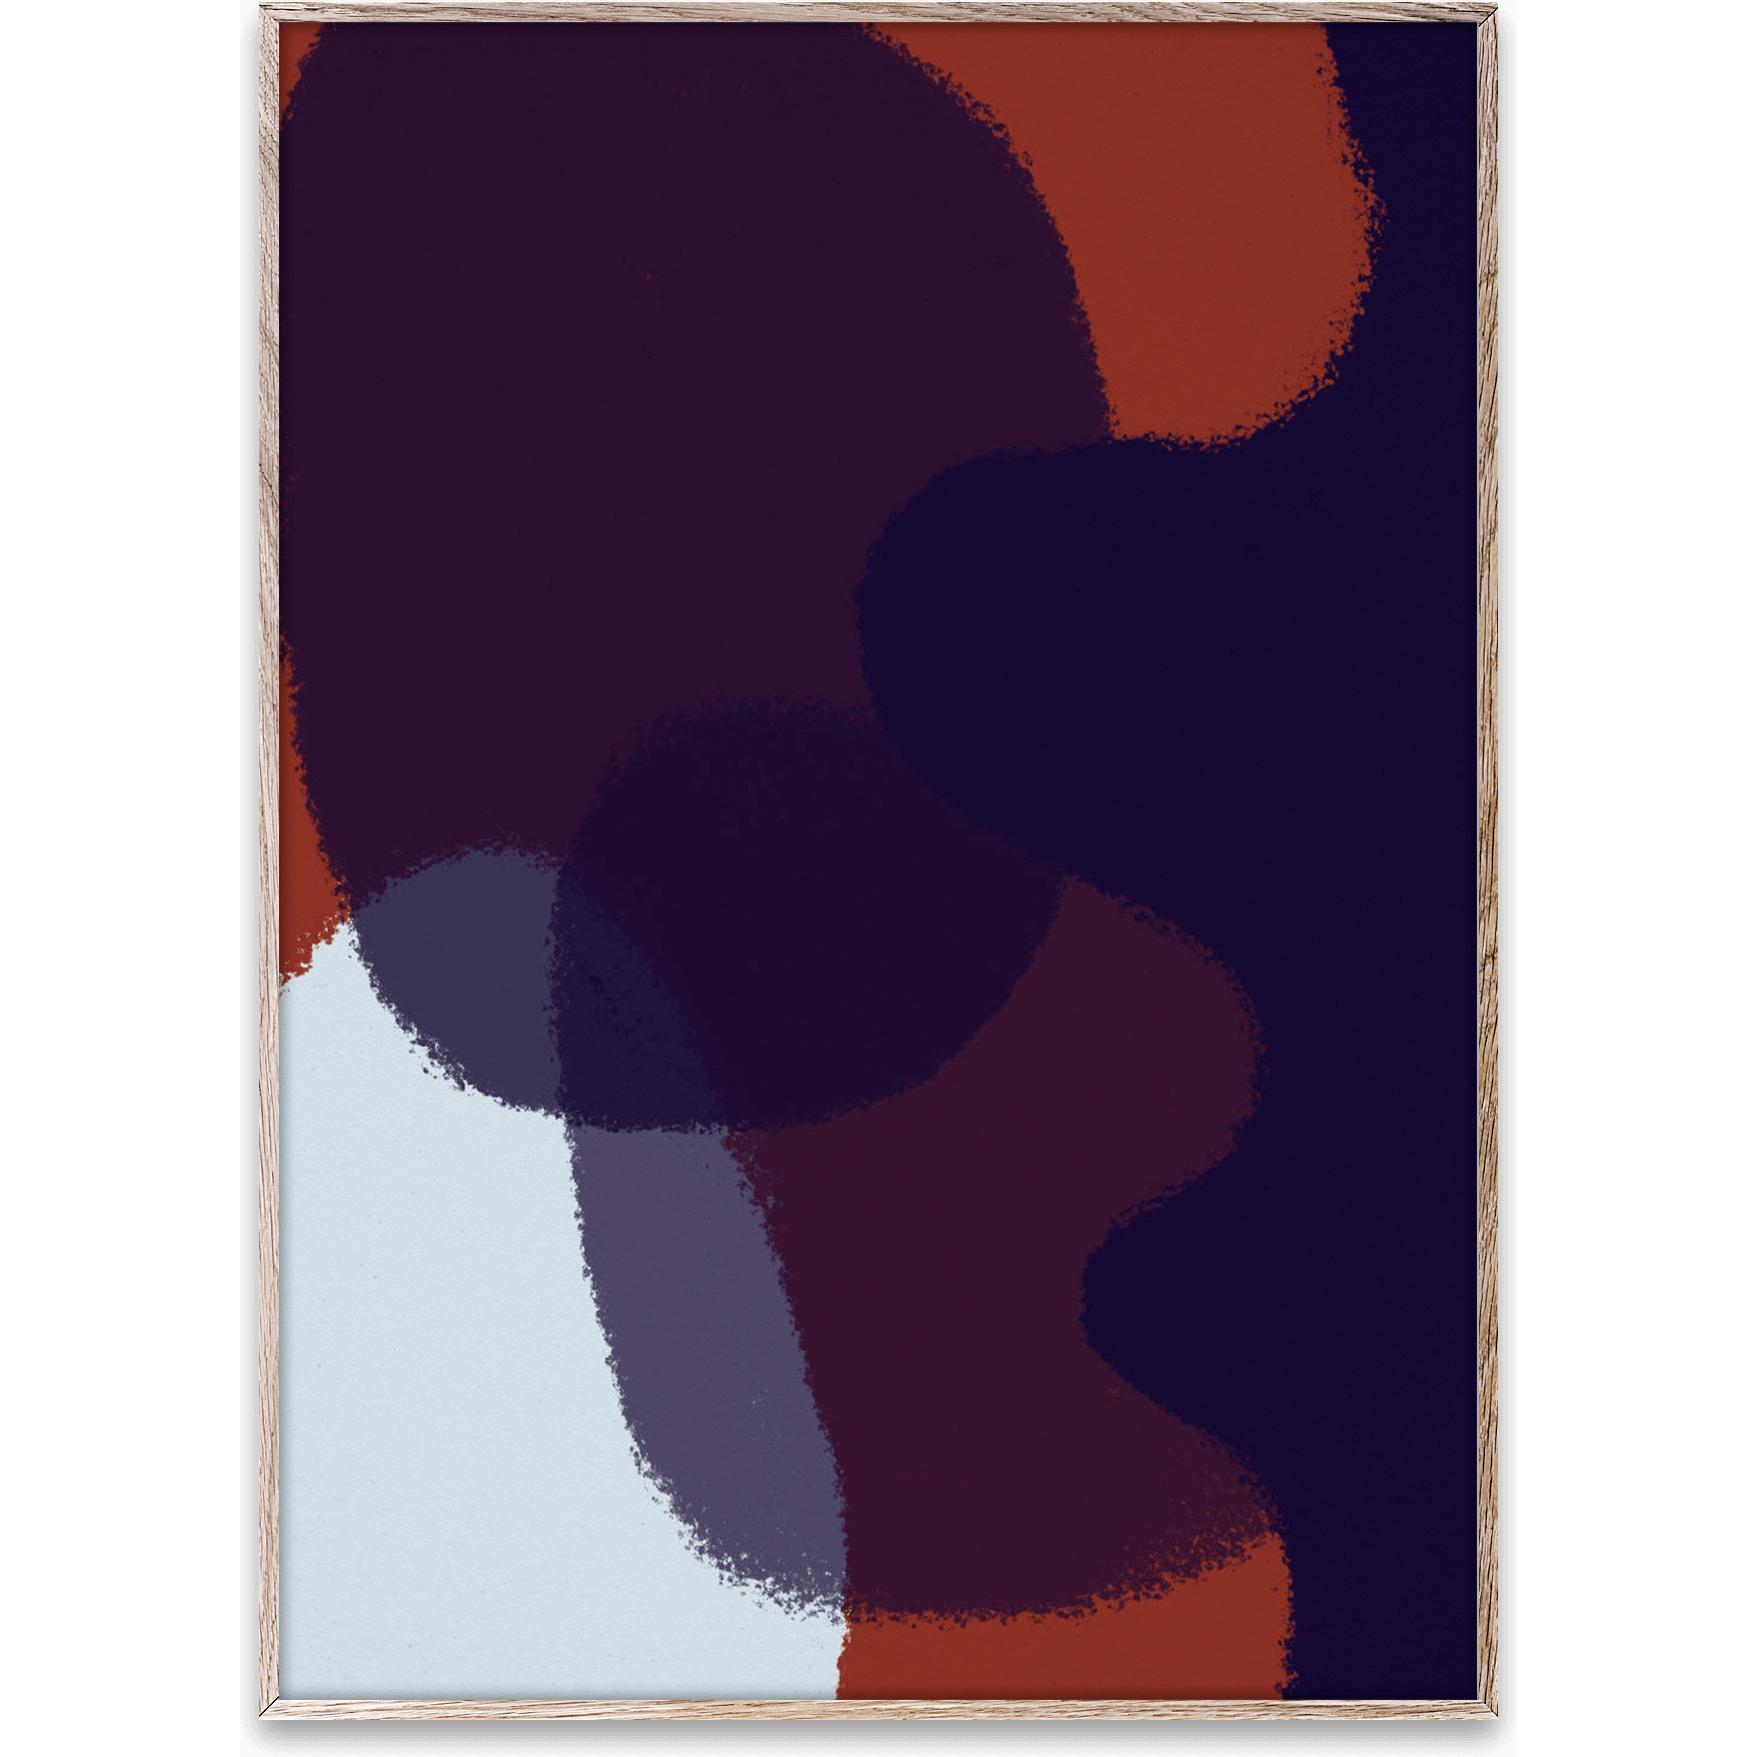 Paper Collective Grain d'encre 03 Affiche, 50x70 cm